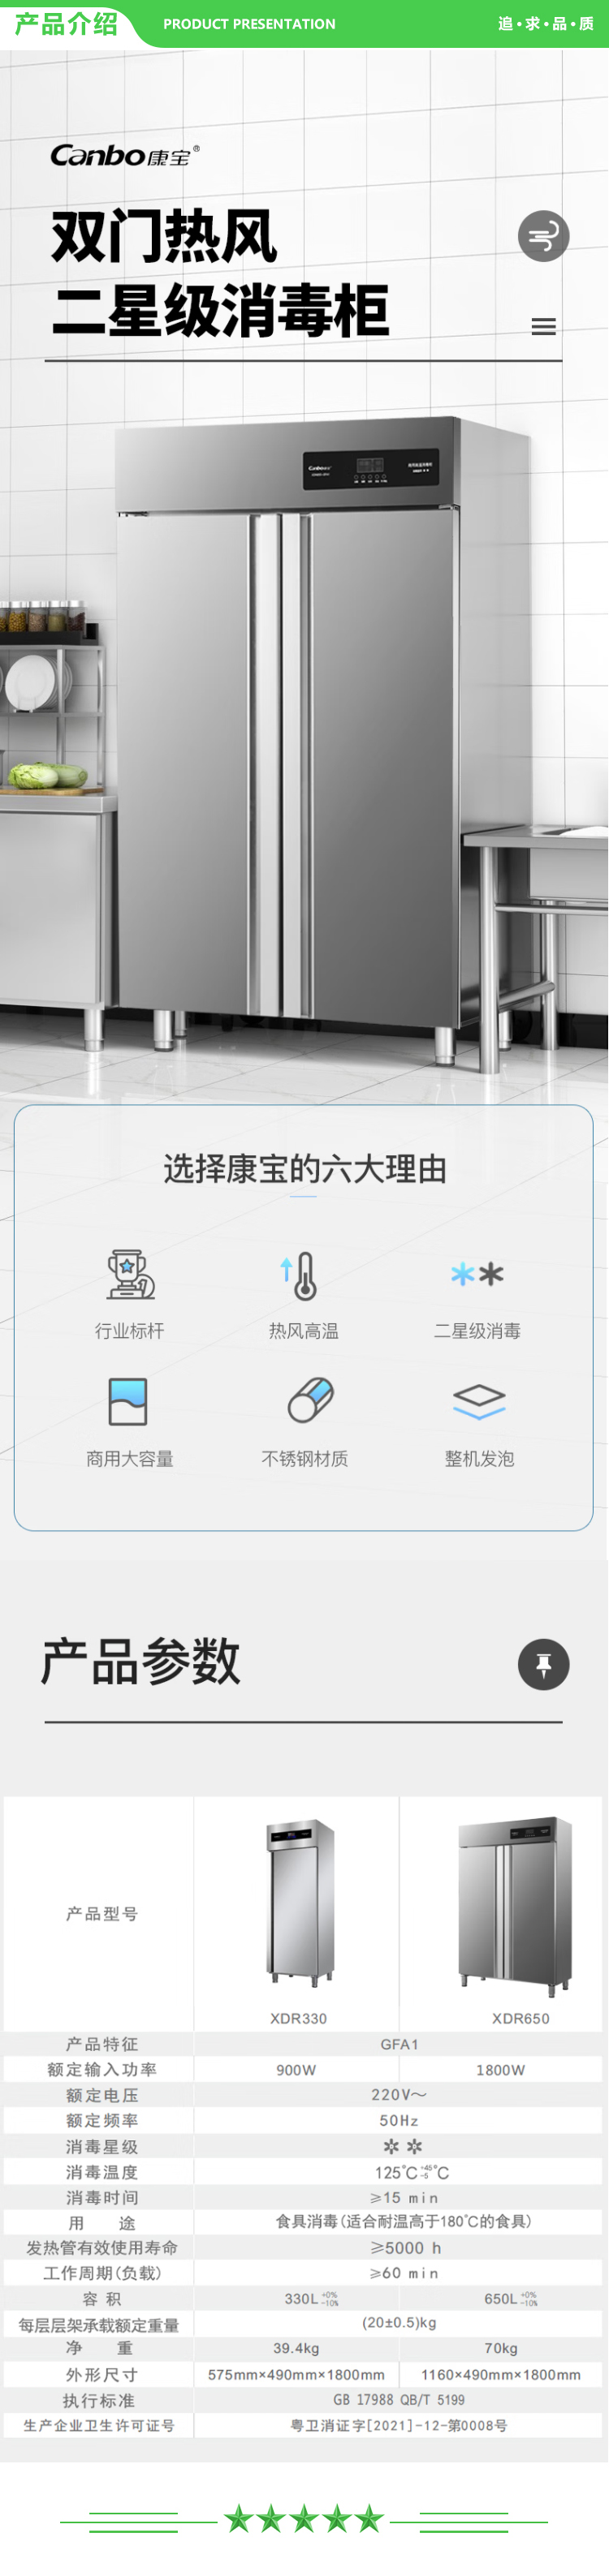 康宝 Canbo XDR330-GFA1 消毒柜 商用 立式 厨房 大容量 高温消毒碗柜 碗筷保洁柜 .jpg